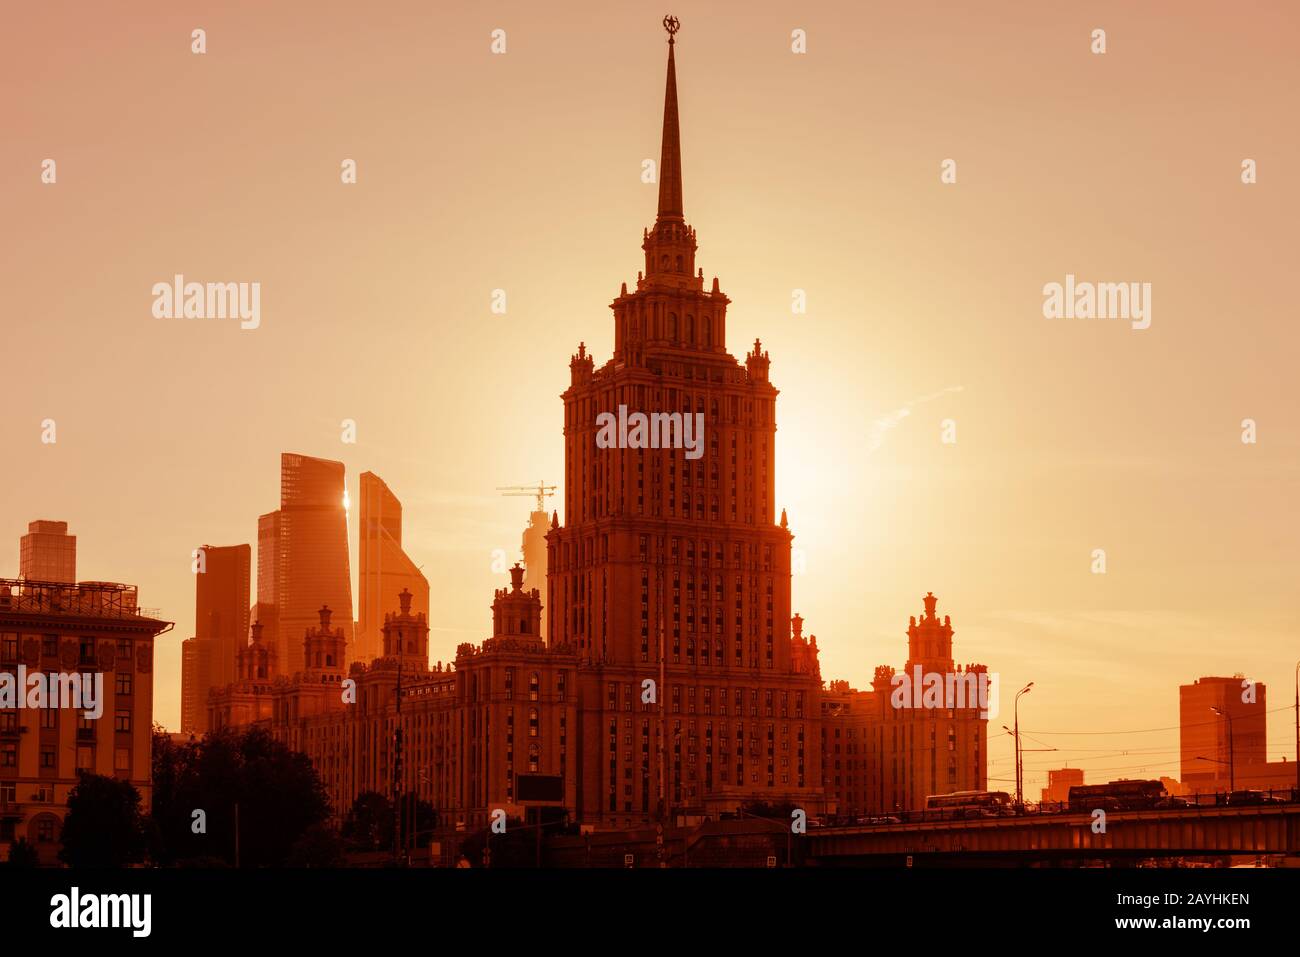 Radisson Royal Hotel (ex Ucraina) al tramonto, Mosca, Russia. E' un grattacielo stalinista e punto di riferimento di Mosca. Panorama soleggiato di Mosca Foto Stock